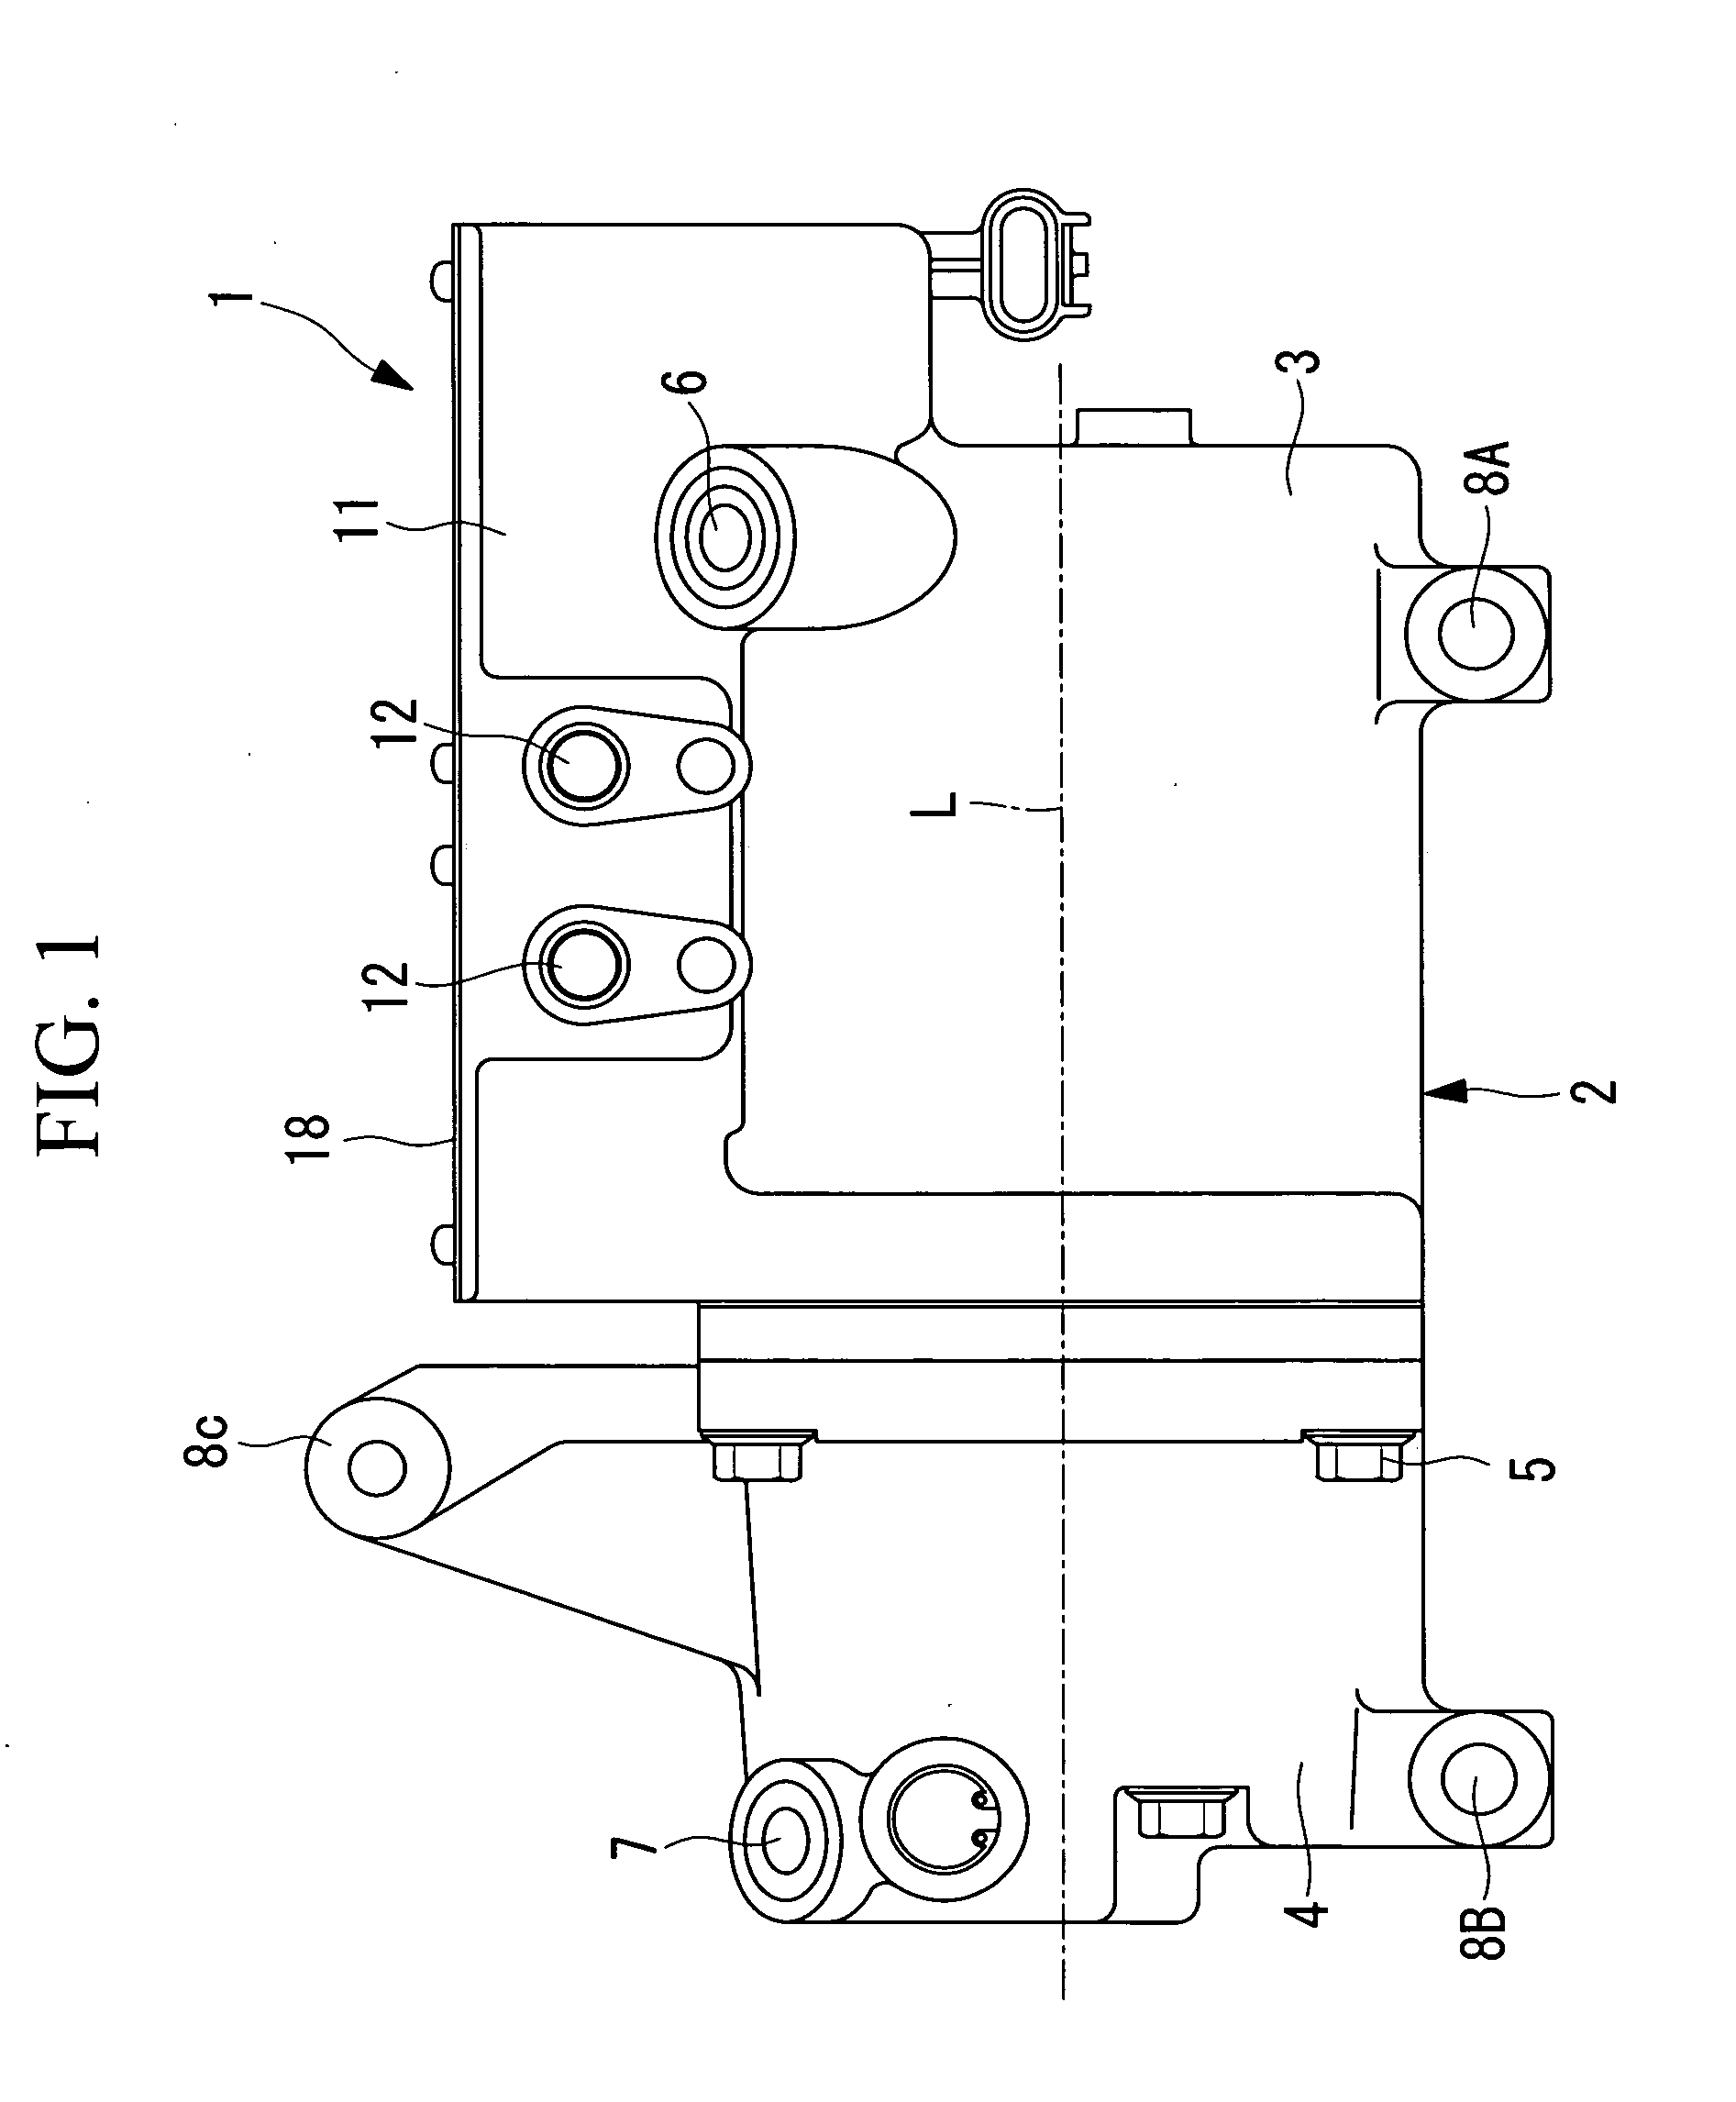 Integrated-inverter electric compressor